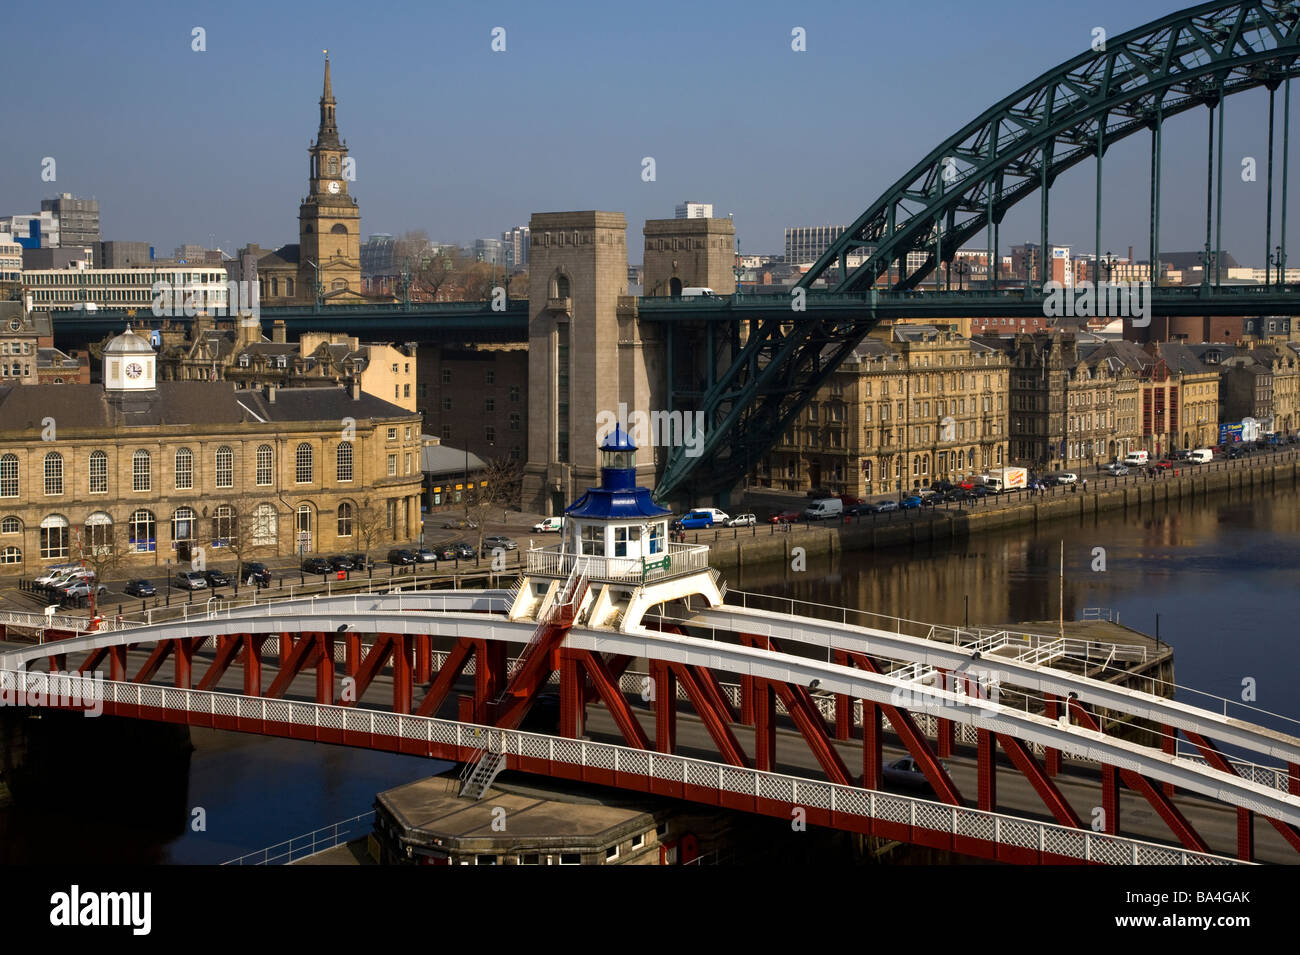 Tyne et rotation des ponts avec les toits de la ville, Newcastle, Gateshead, Angleterre. Banque D'Images